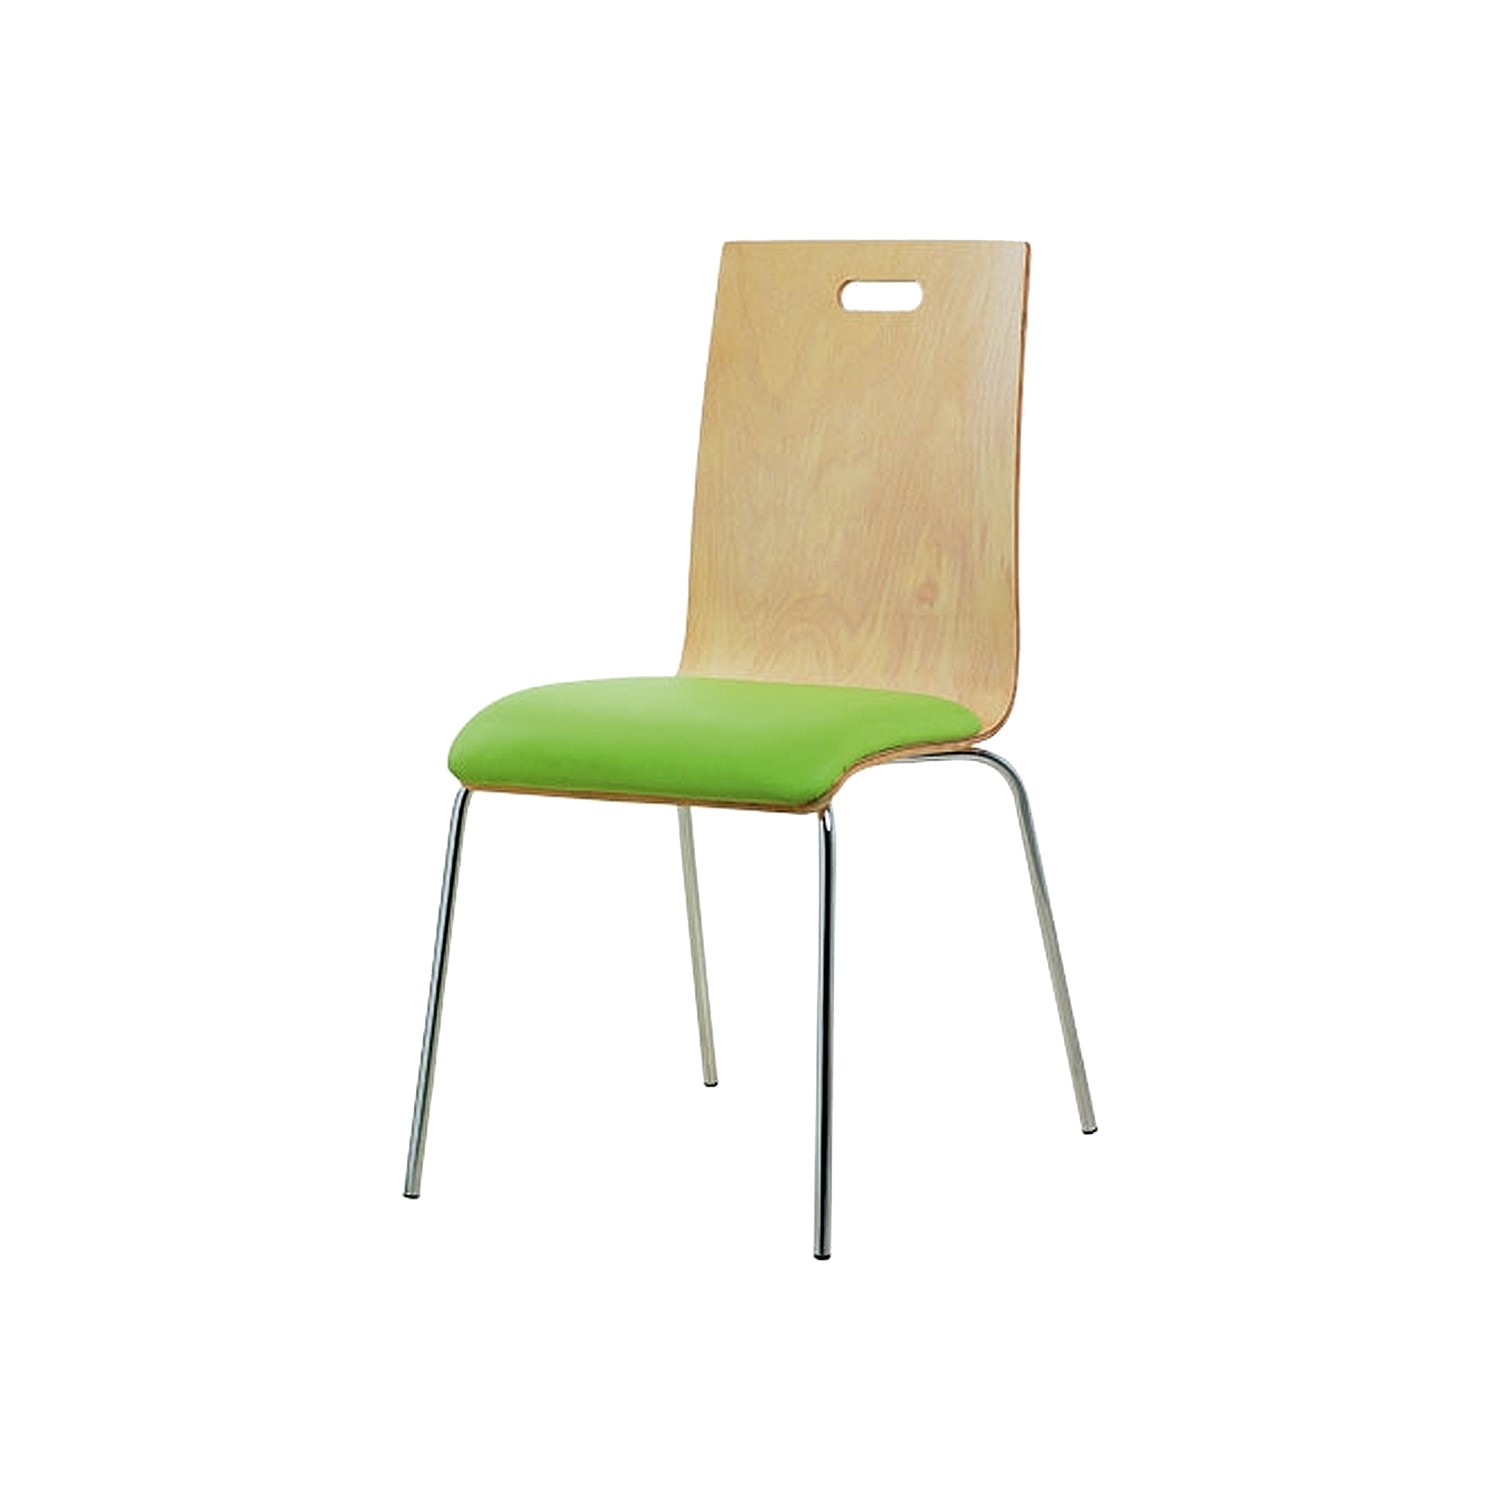 Asbir 63100 Cafe Koltuk Verzalit Sandalye Fiyatı